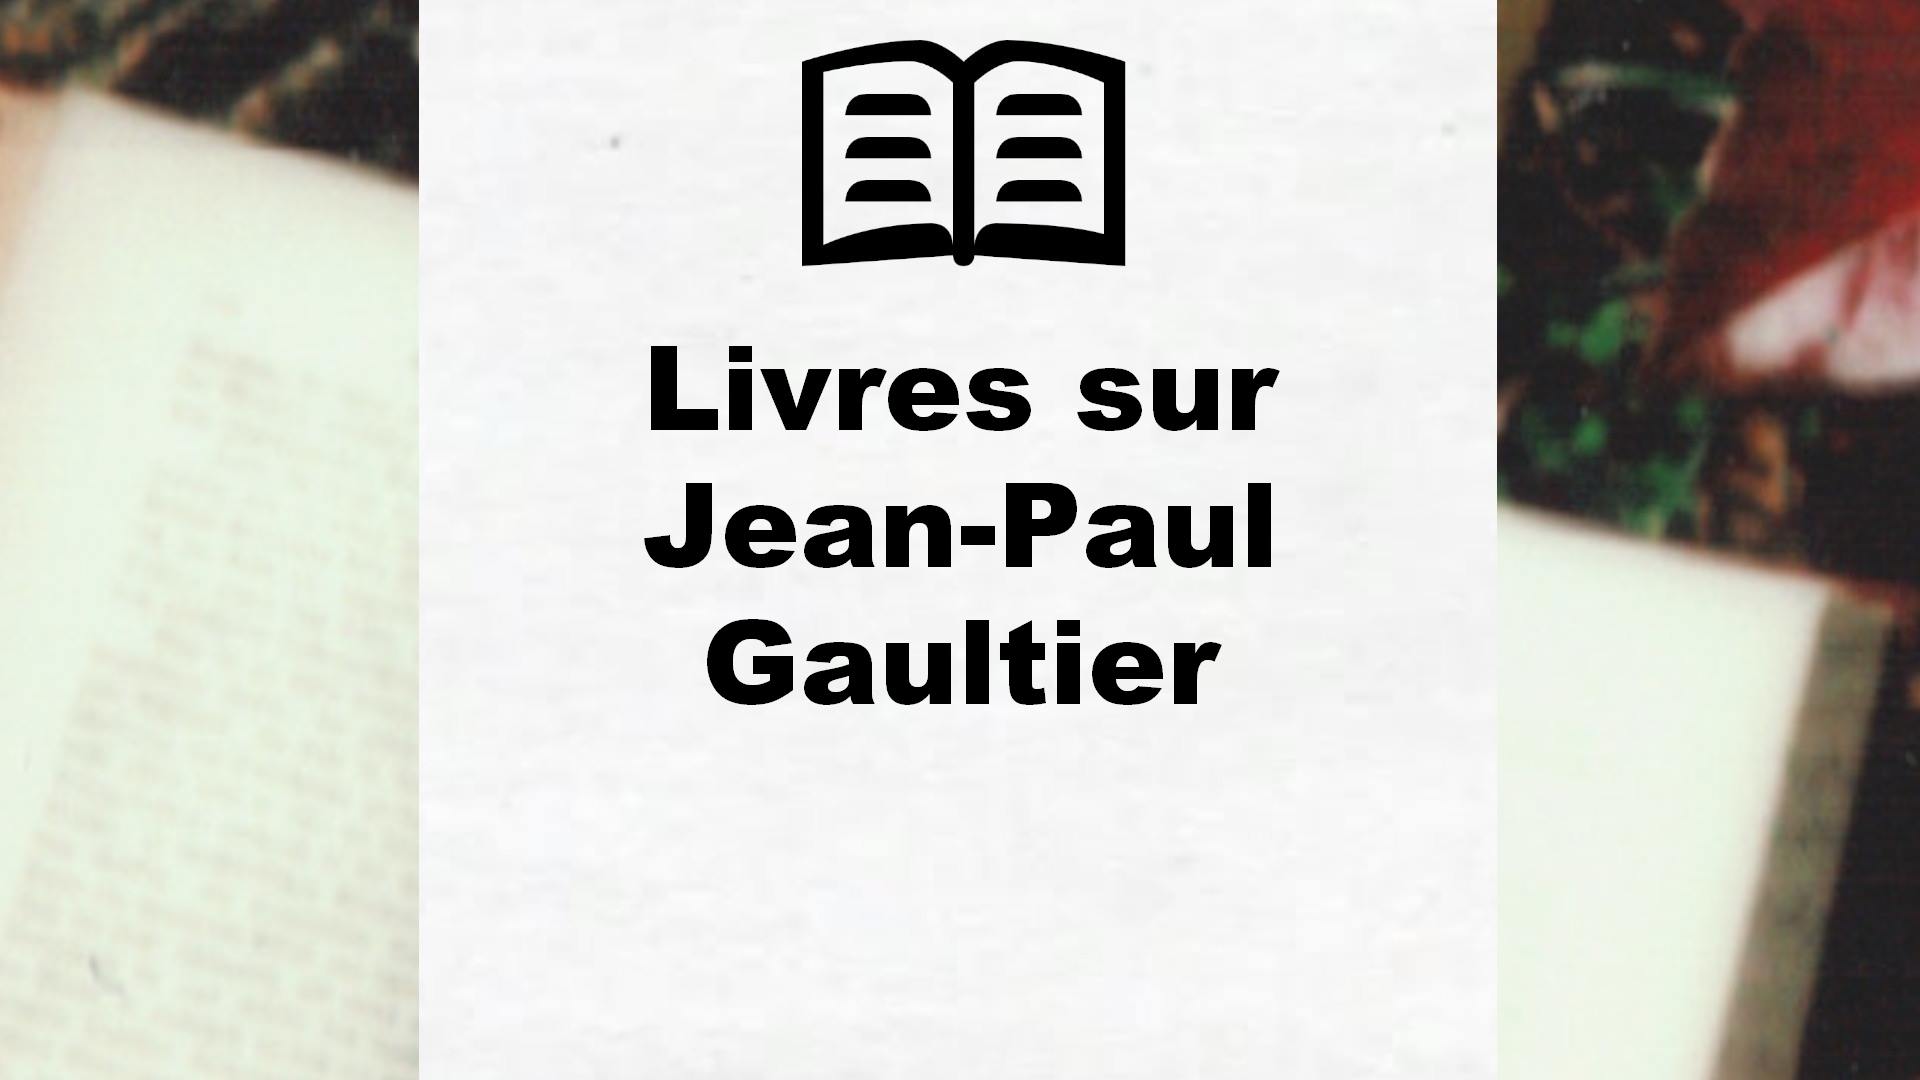 Livres sur Jean-Paul Gaultier